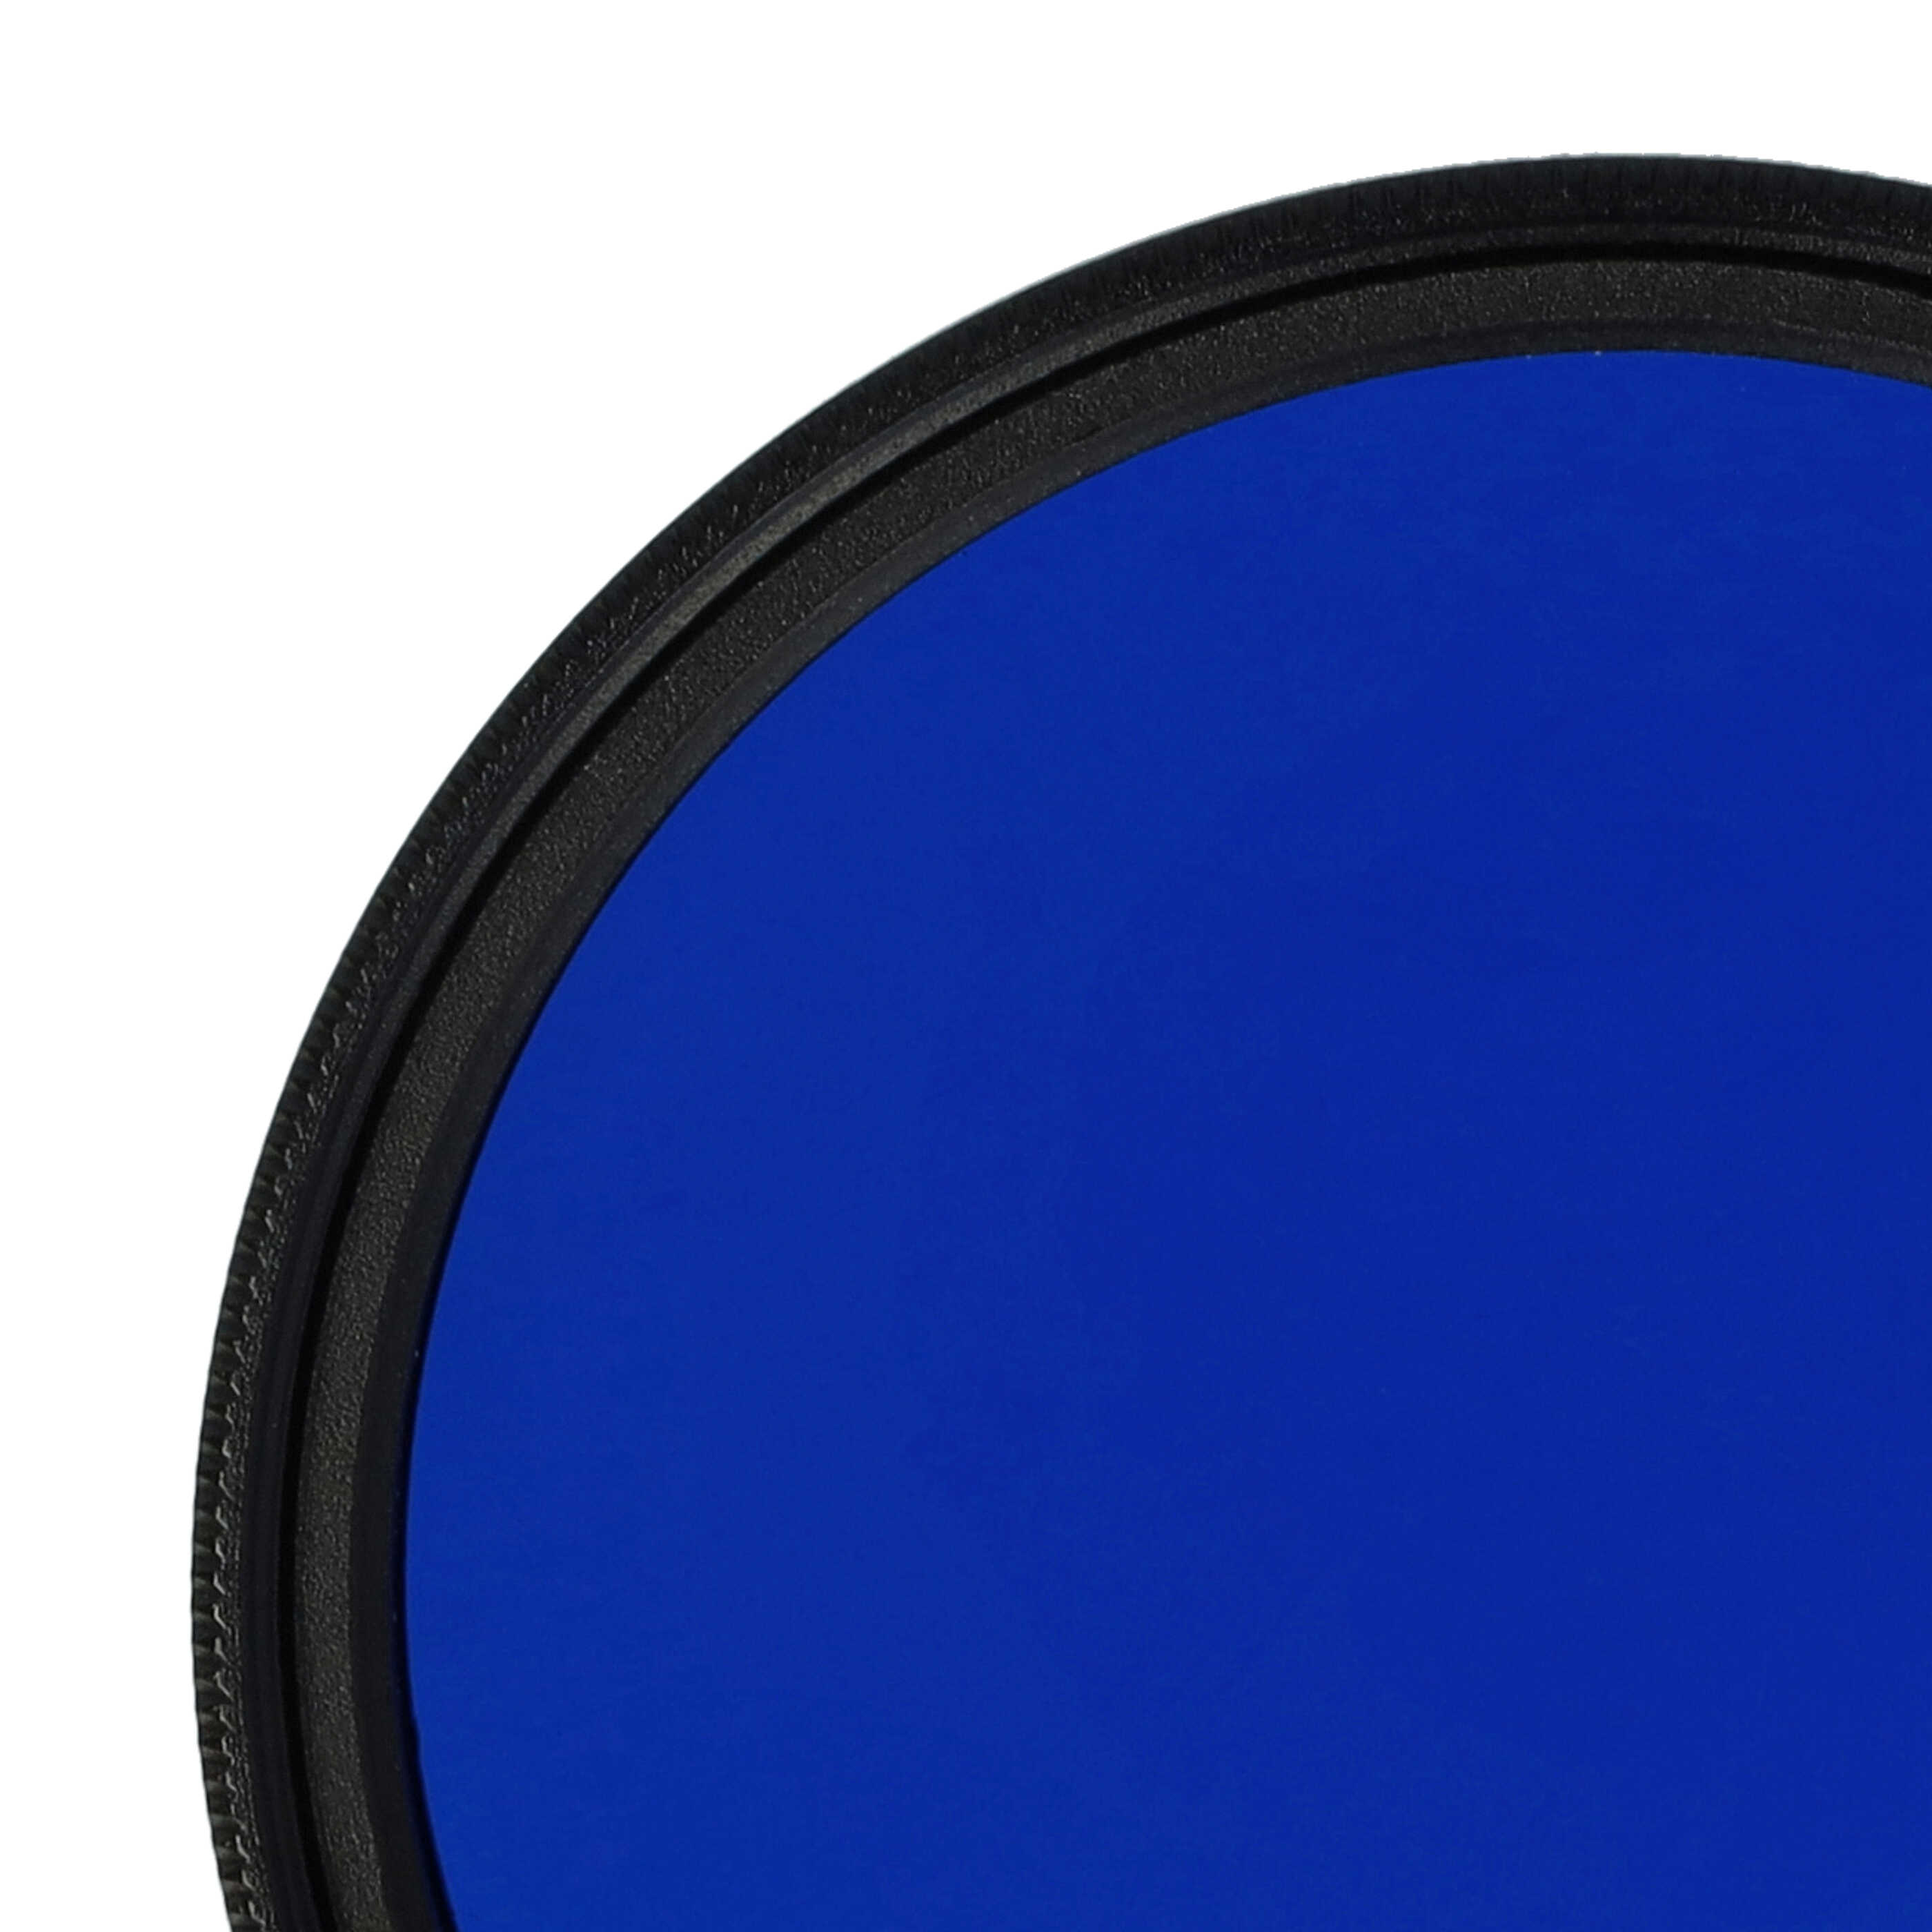 Filtro de color para objetivo de cámara con rosca de filtro de 49 mm - Filtro azul